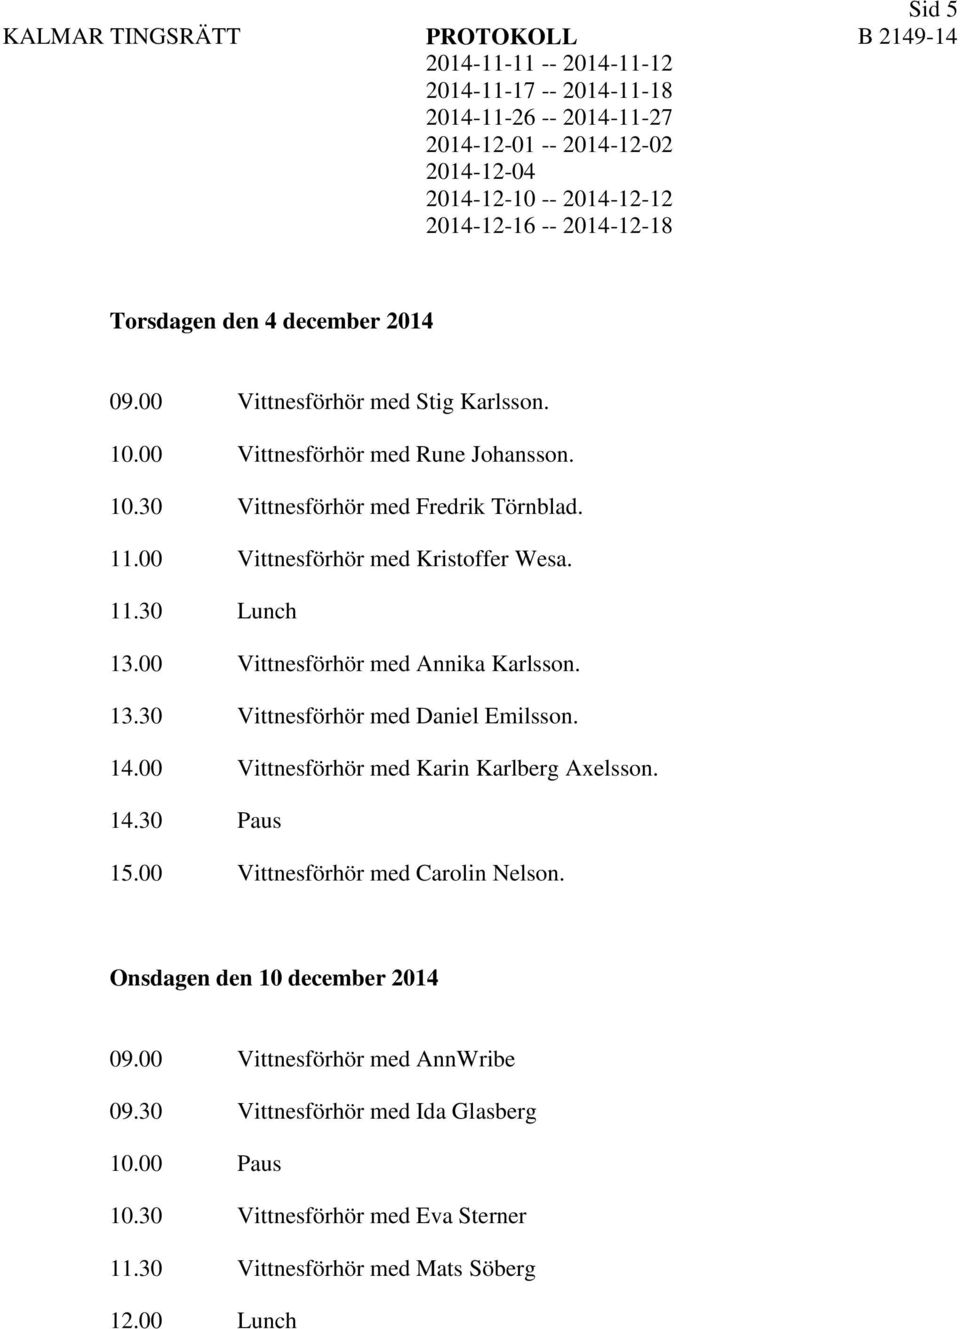 00 Vittnesförhör med Karin Karlberg Axelsson. 14.30 Paus 15.00 Vittnesförhör med Carolin Nelson. Onsdagen den 10 december 2014 09.